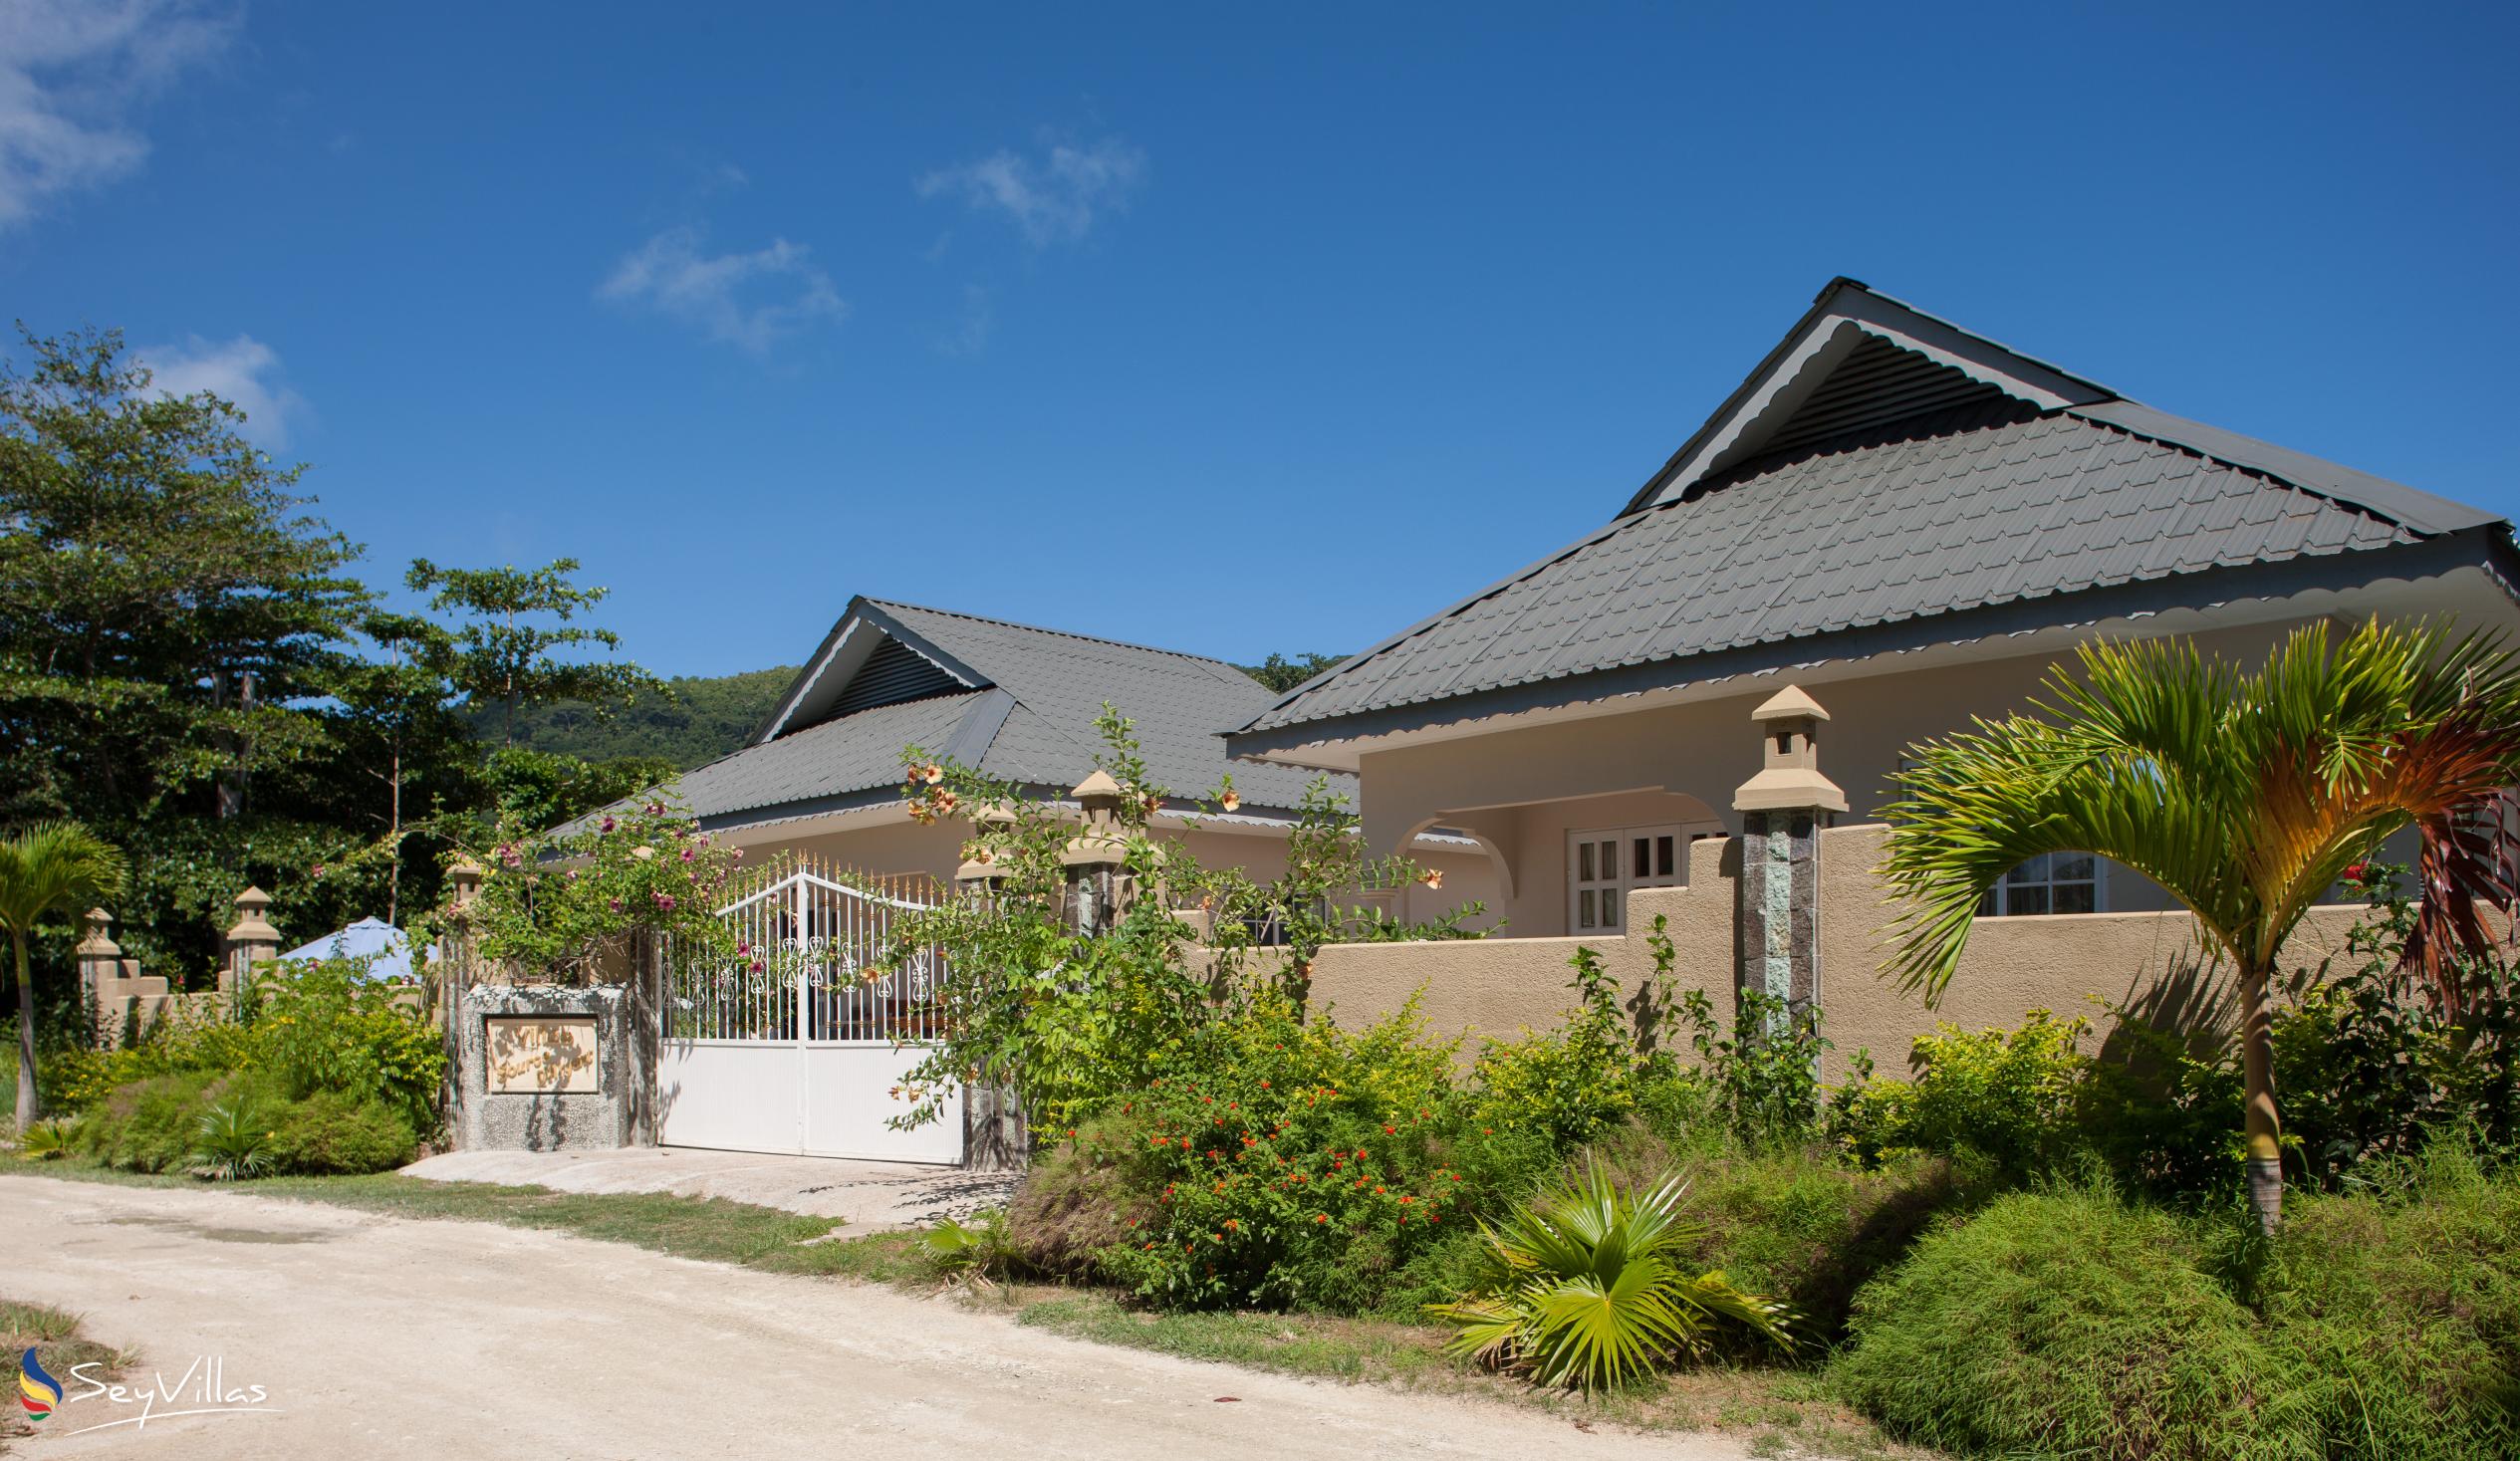 Foto 4: Villa Source D'Argent - Aussenbereich - La Digue (Seychellen)